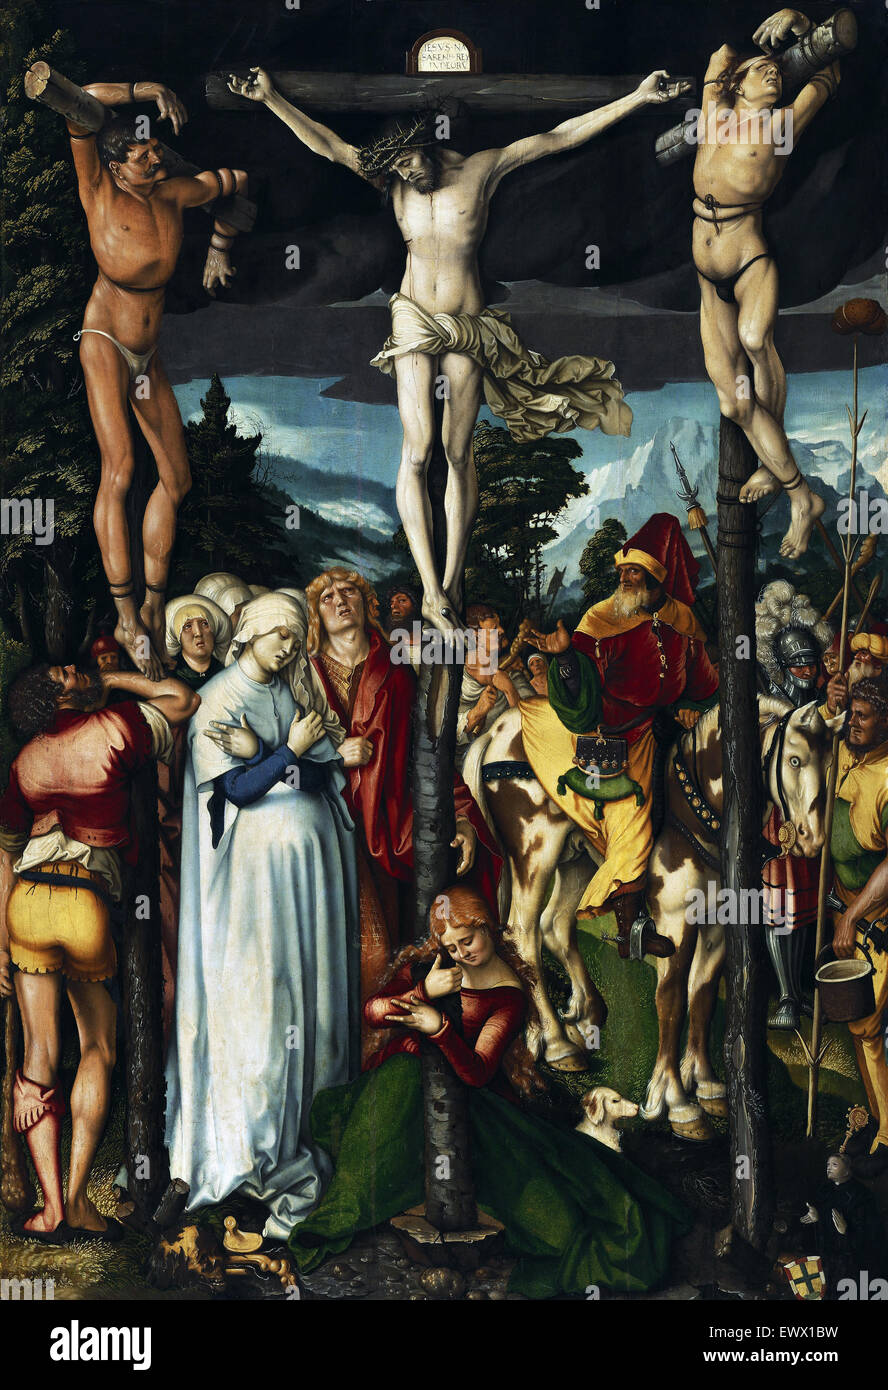 Hans Baldung, die Kreuzigung Christi 1512 Öl auf Lindenholz. Gemäldegalerie, Berlin, Deutschland. Stockfoto